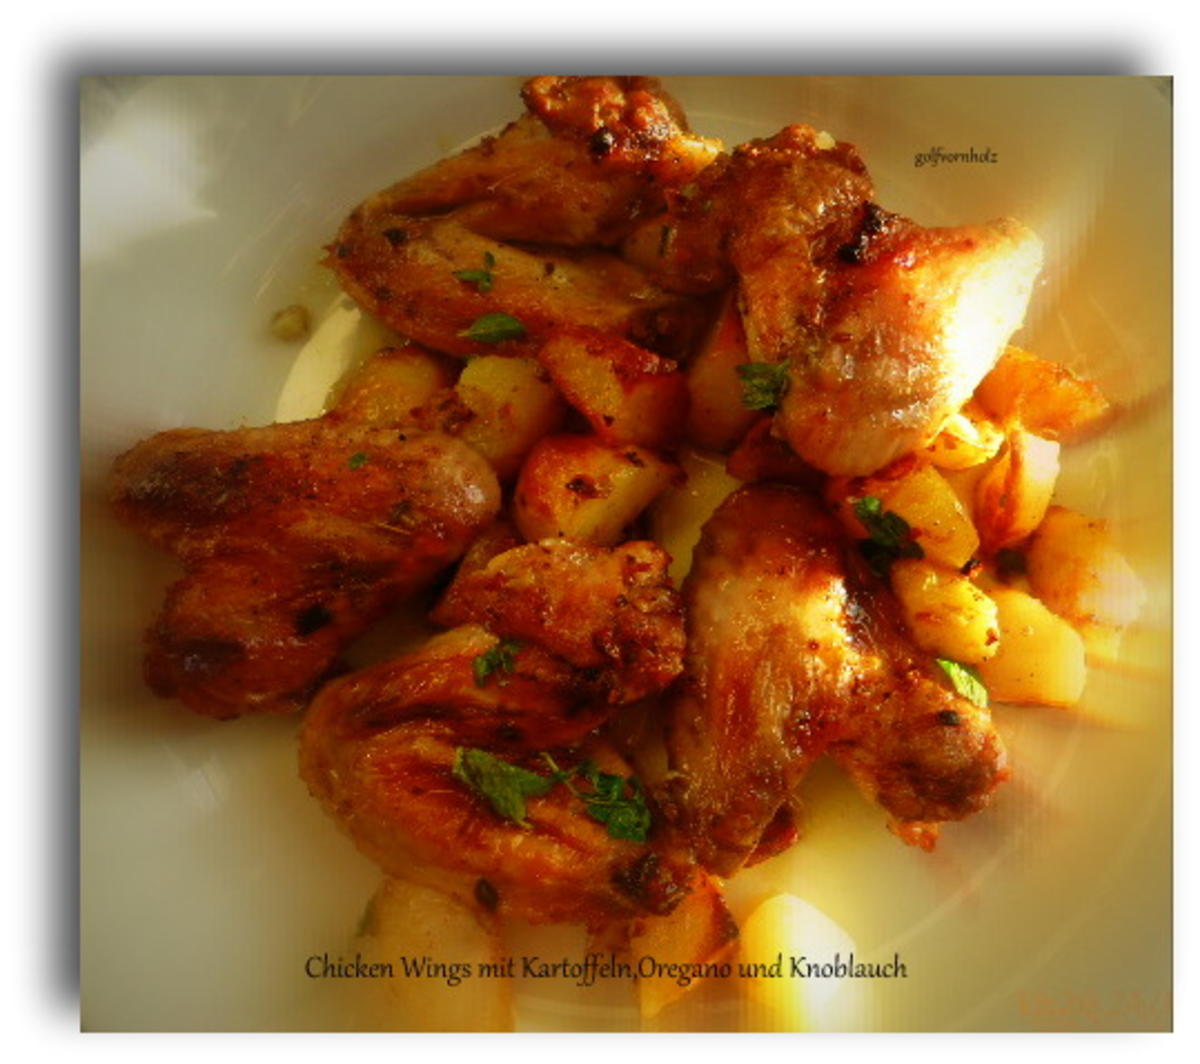 Chicken Wings mit Kartoffeln,Oregano und Knoblauch - Rezept - Bild Nr. 3440